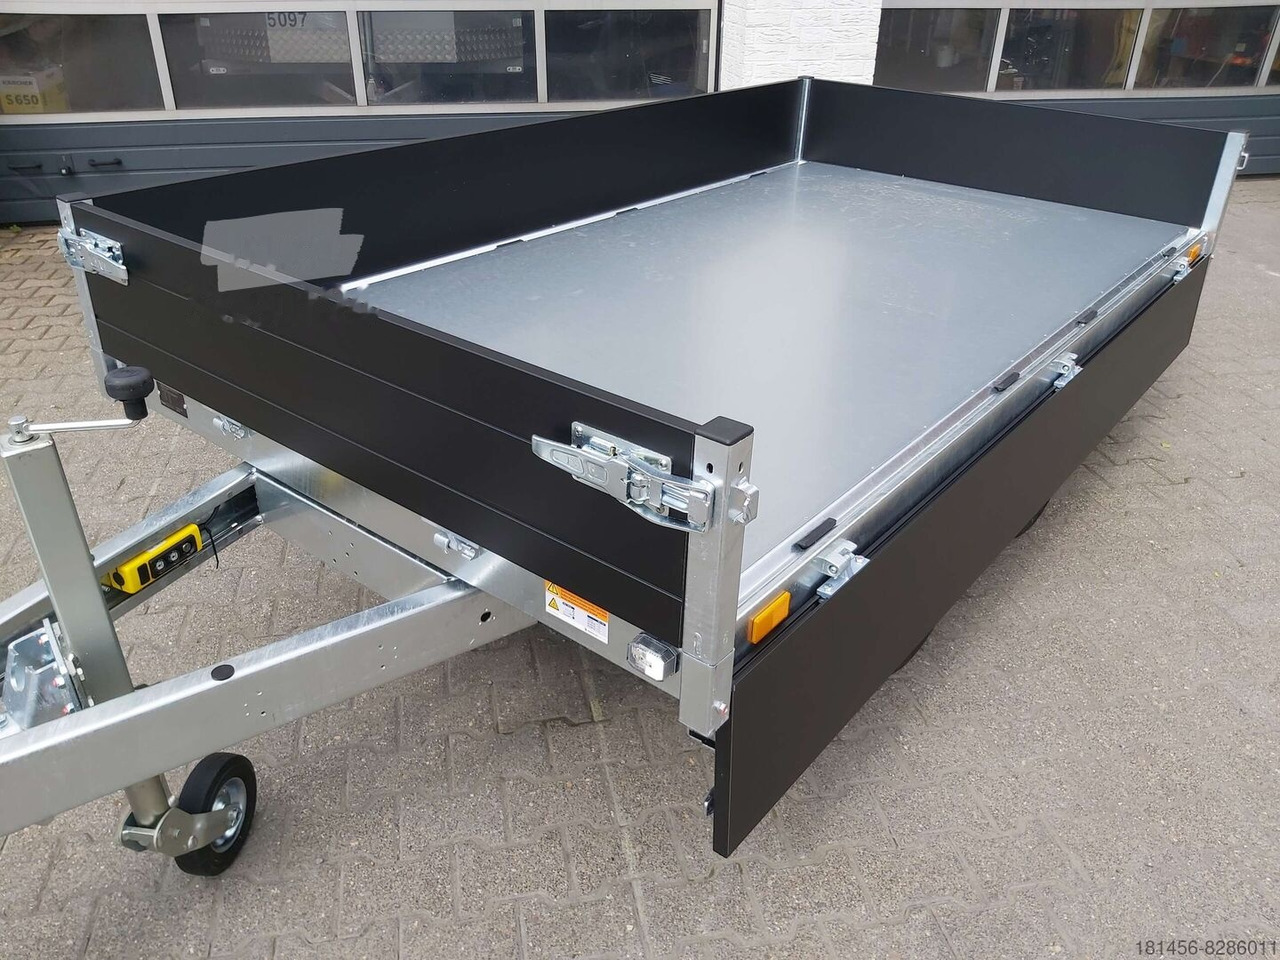 Saris Heckkipper K1 276 150 2700kg elektro direkt verfügbar jetzt kaufen - Tipper trailer: picture 3